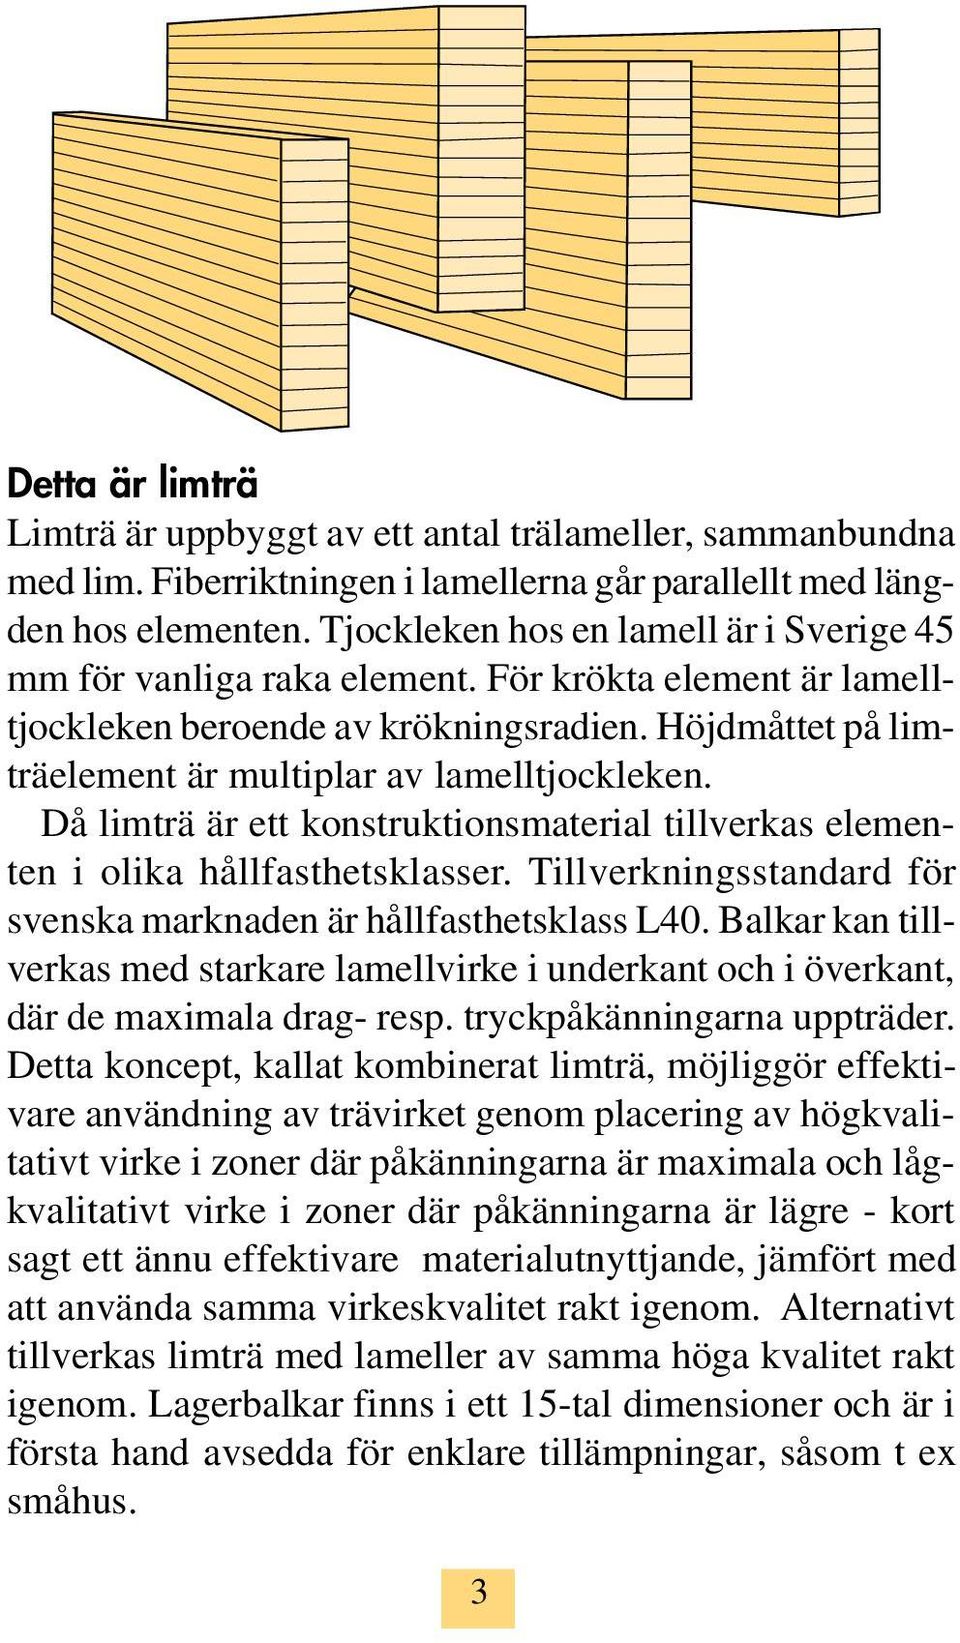 Då limträ är ett konstruktionsmaterial tillverkas elementen i olika hållfasthetsklasser. Tillverkningsstandard för svenska marknaden är hållfasthetsklass L40.